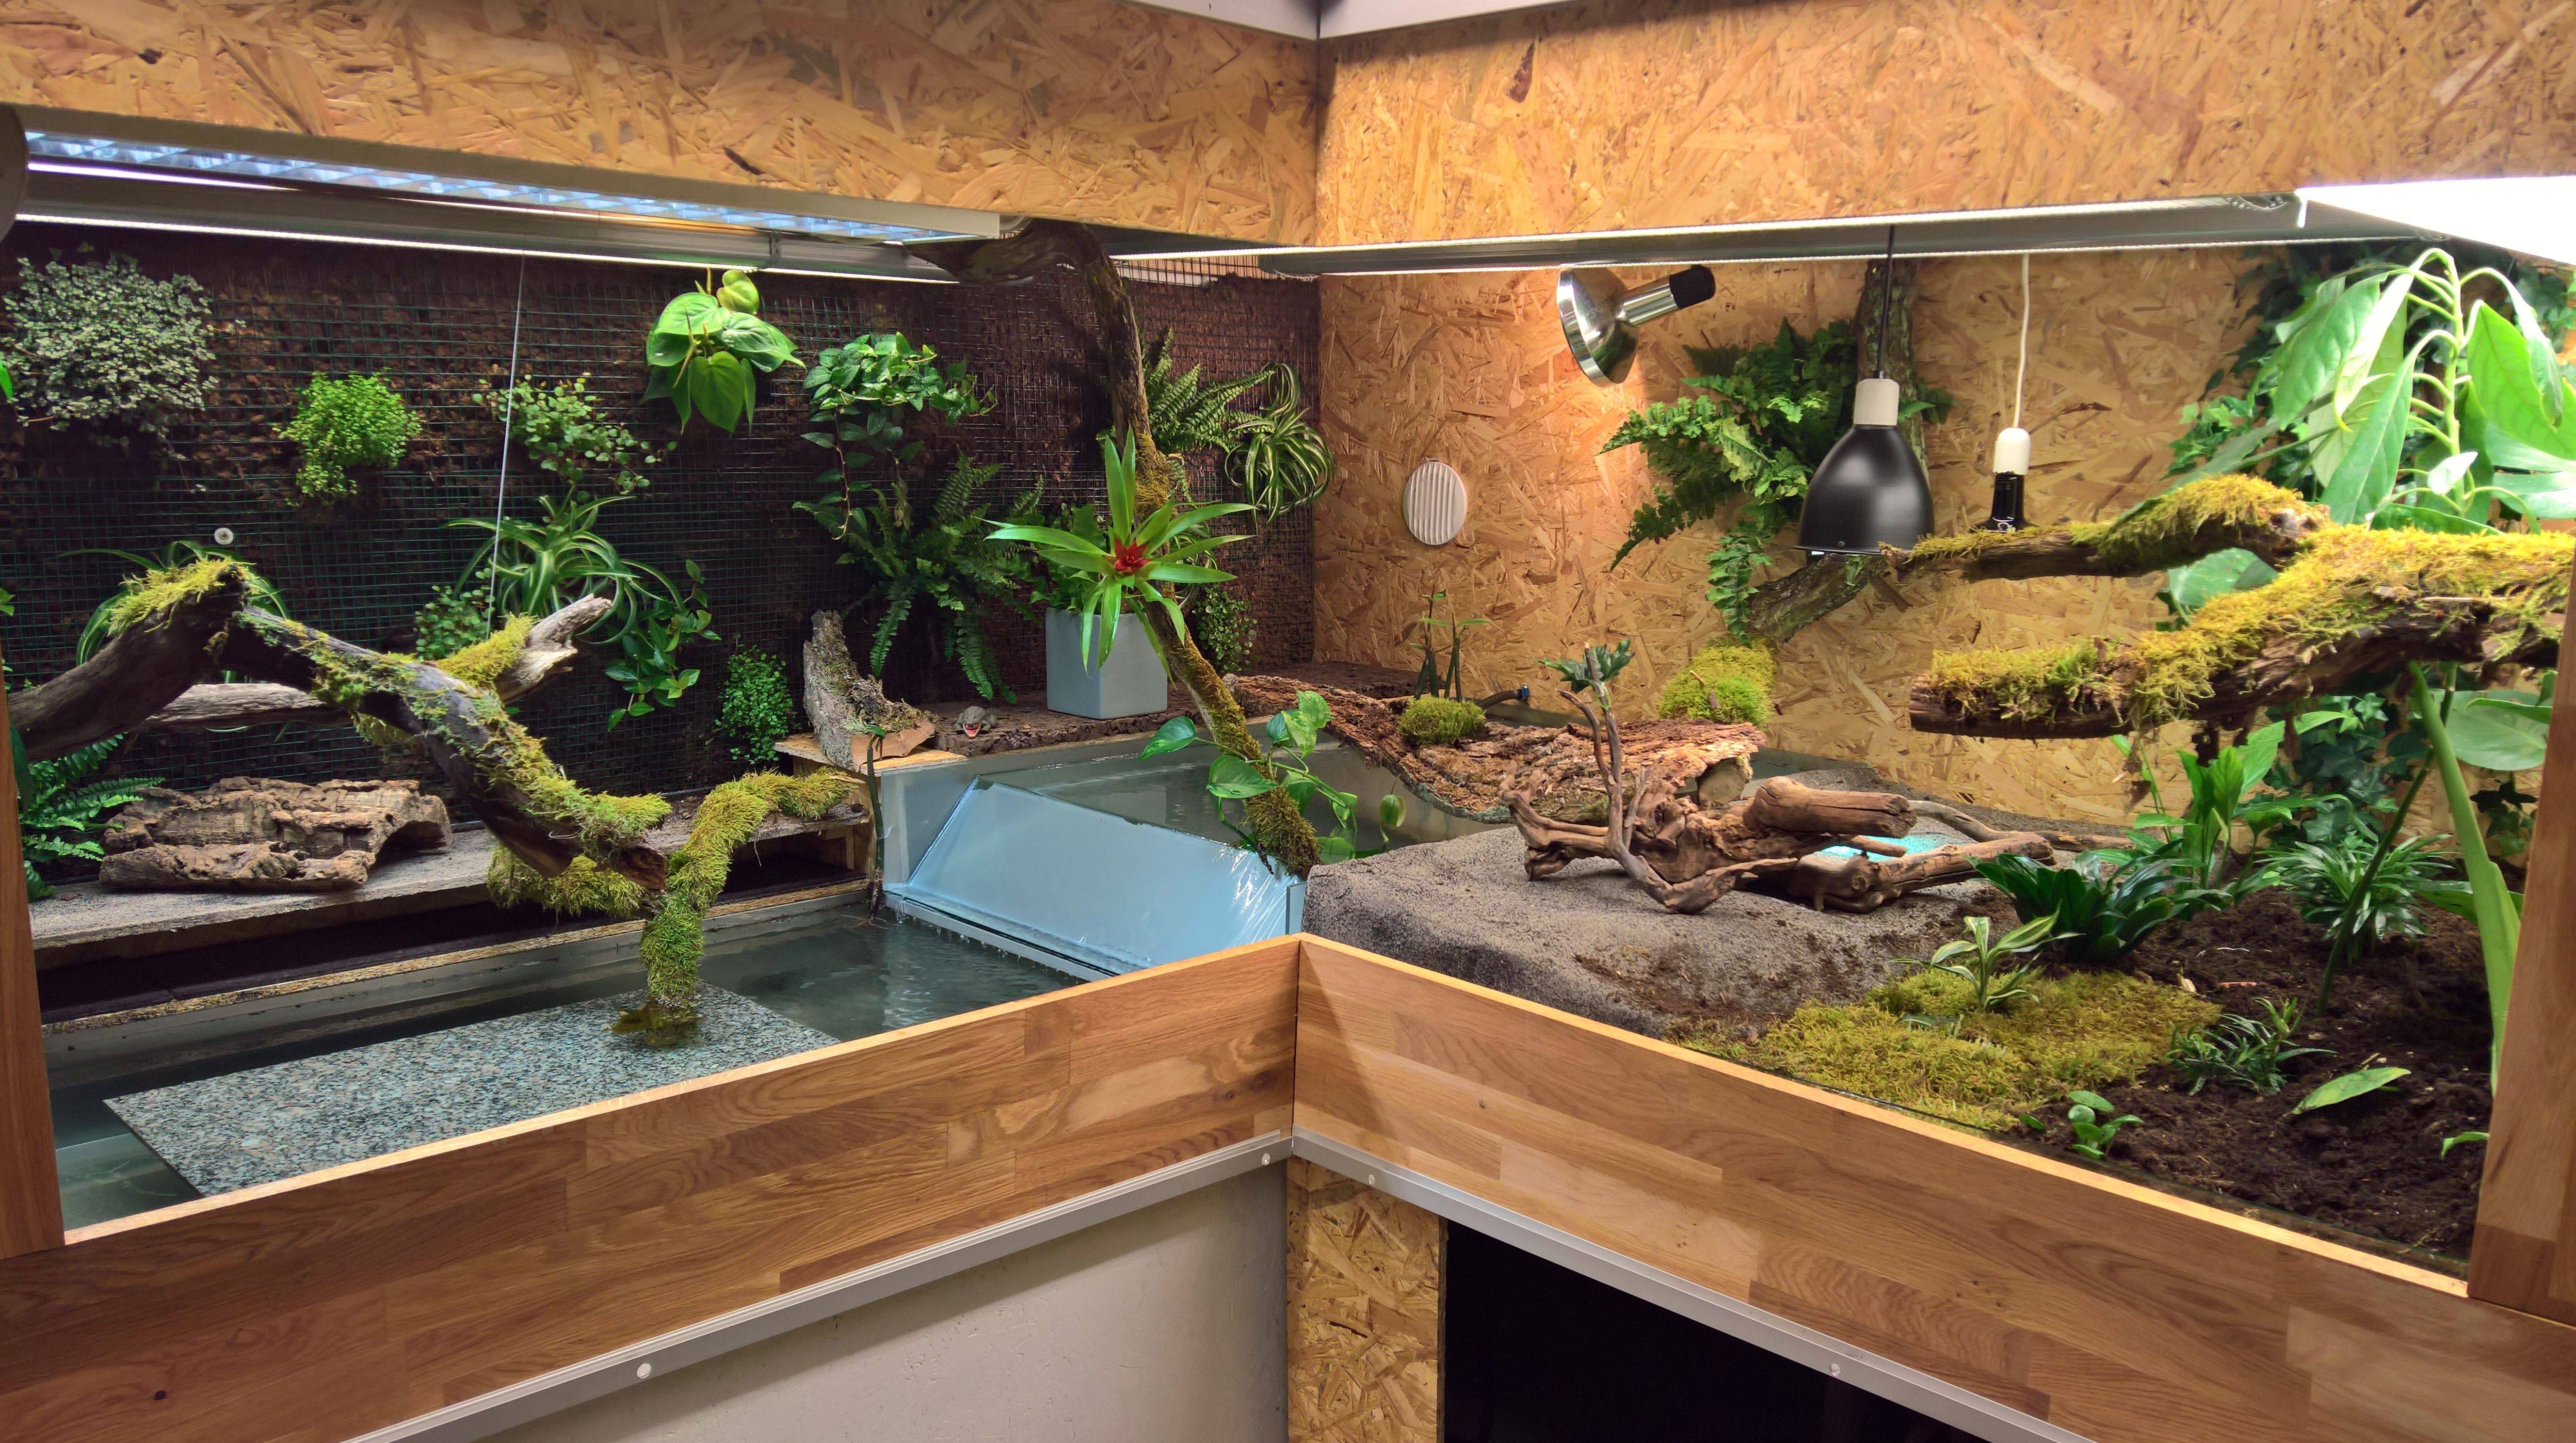 Аквариум для красноухой черепахи: обустройство и оформление акватеррариума, чем украсить резервуар